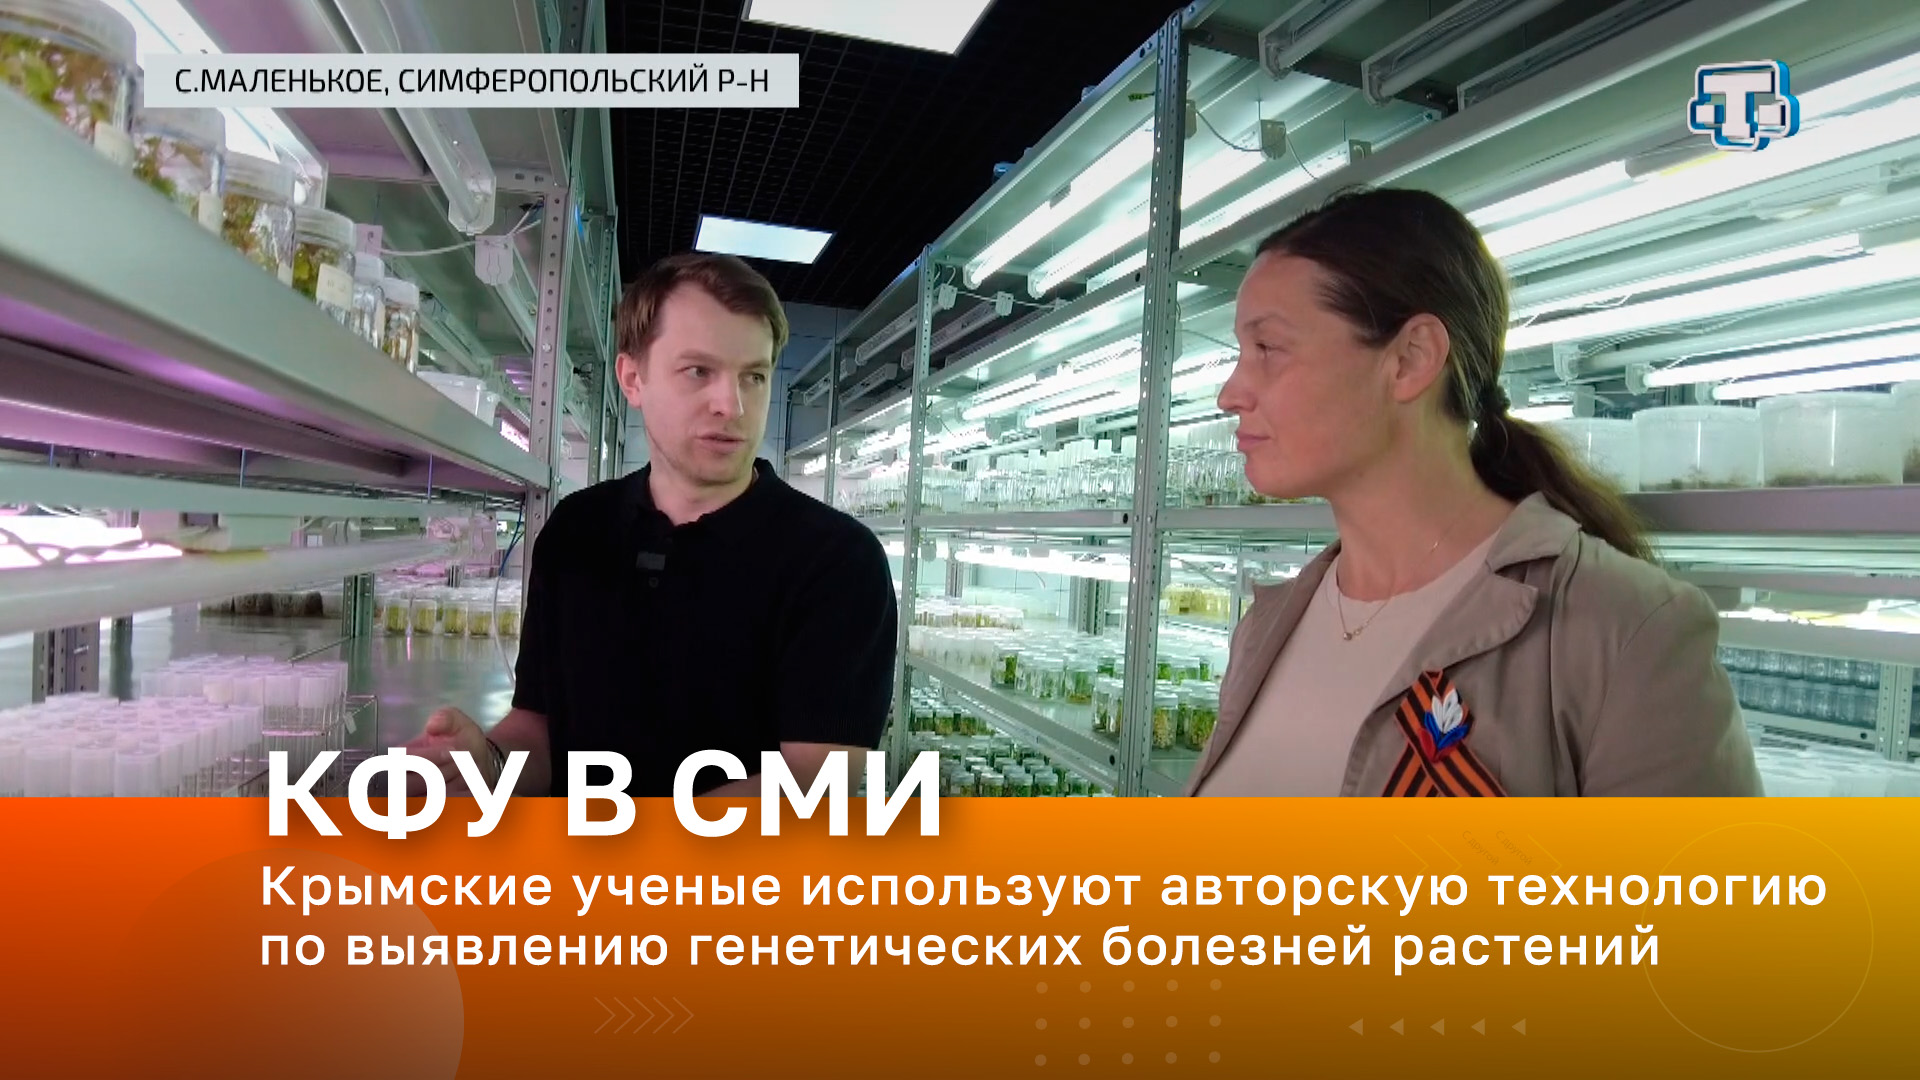 Крымские ученые используют авторскую технологию по выявлению генетических болезней растений